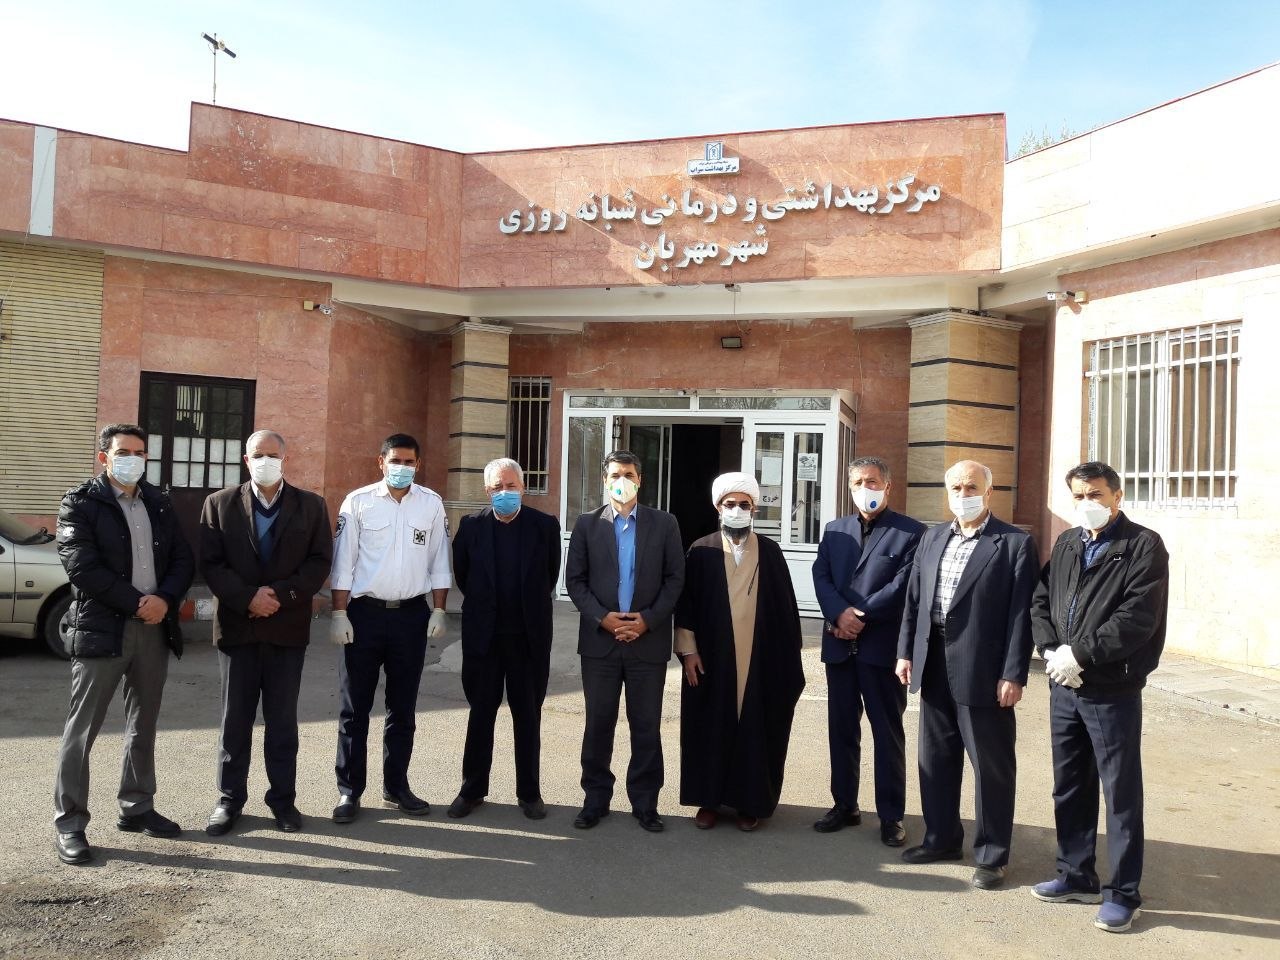 توزیع تجهیزات محافظتی در مراکز بهداشتی و درمانی منطقه مهربان توسط مجمع خیرین سلامت شهرستان سراب